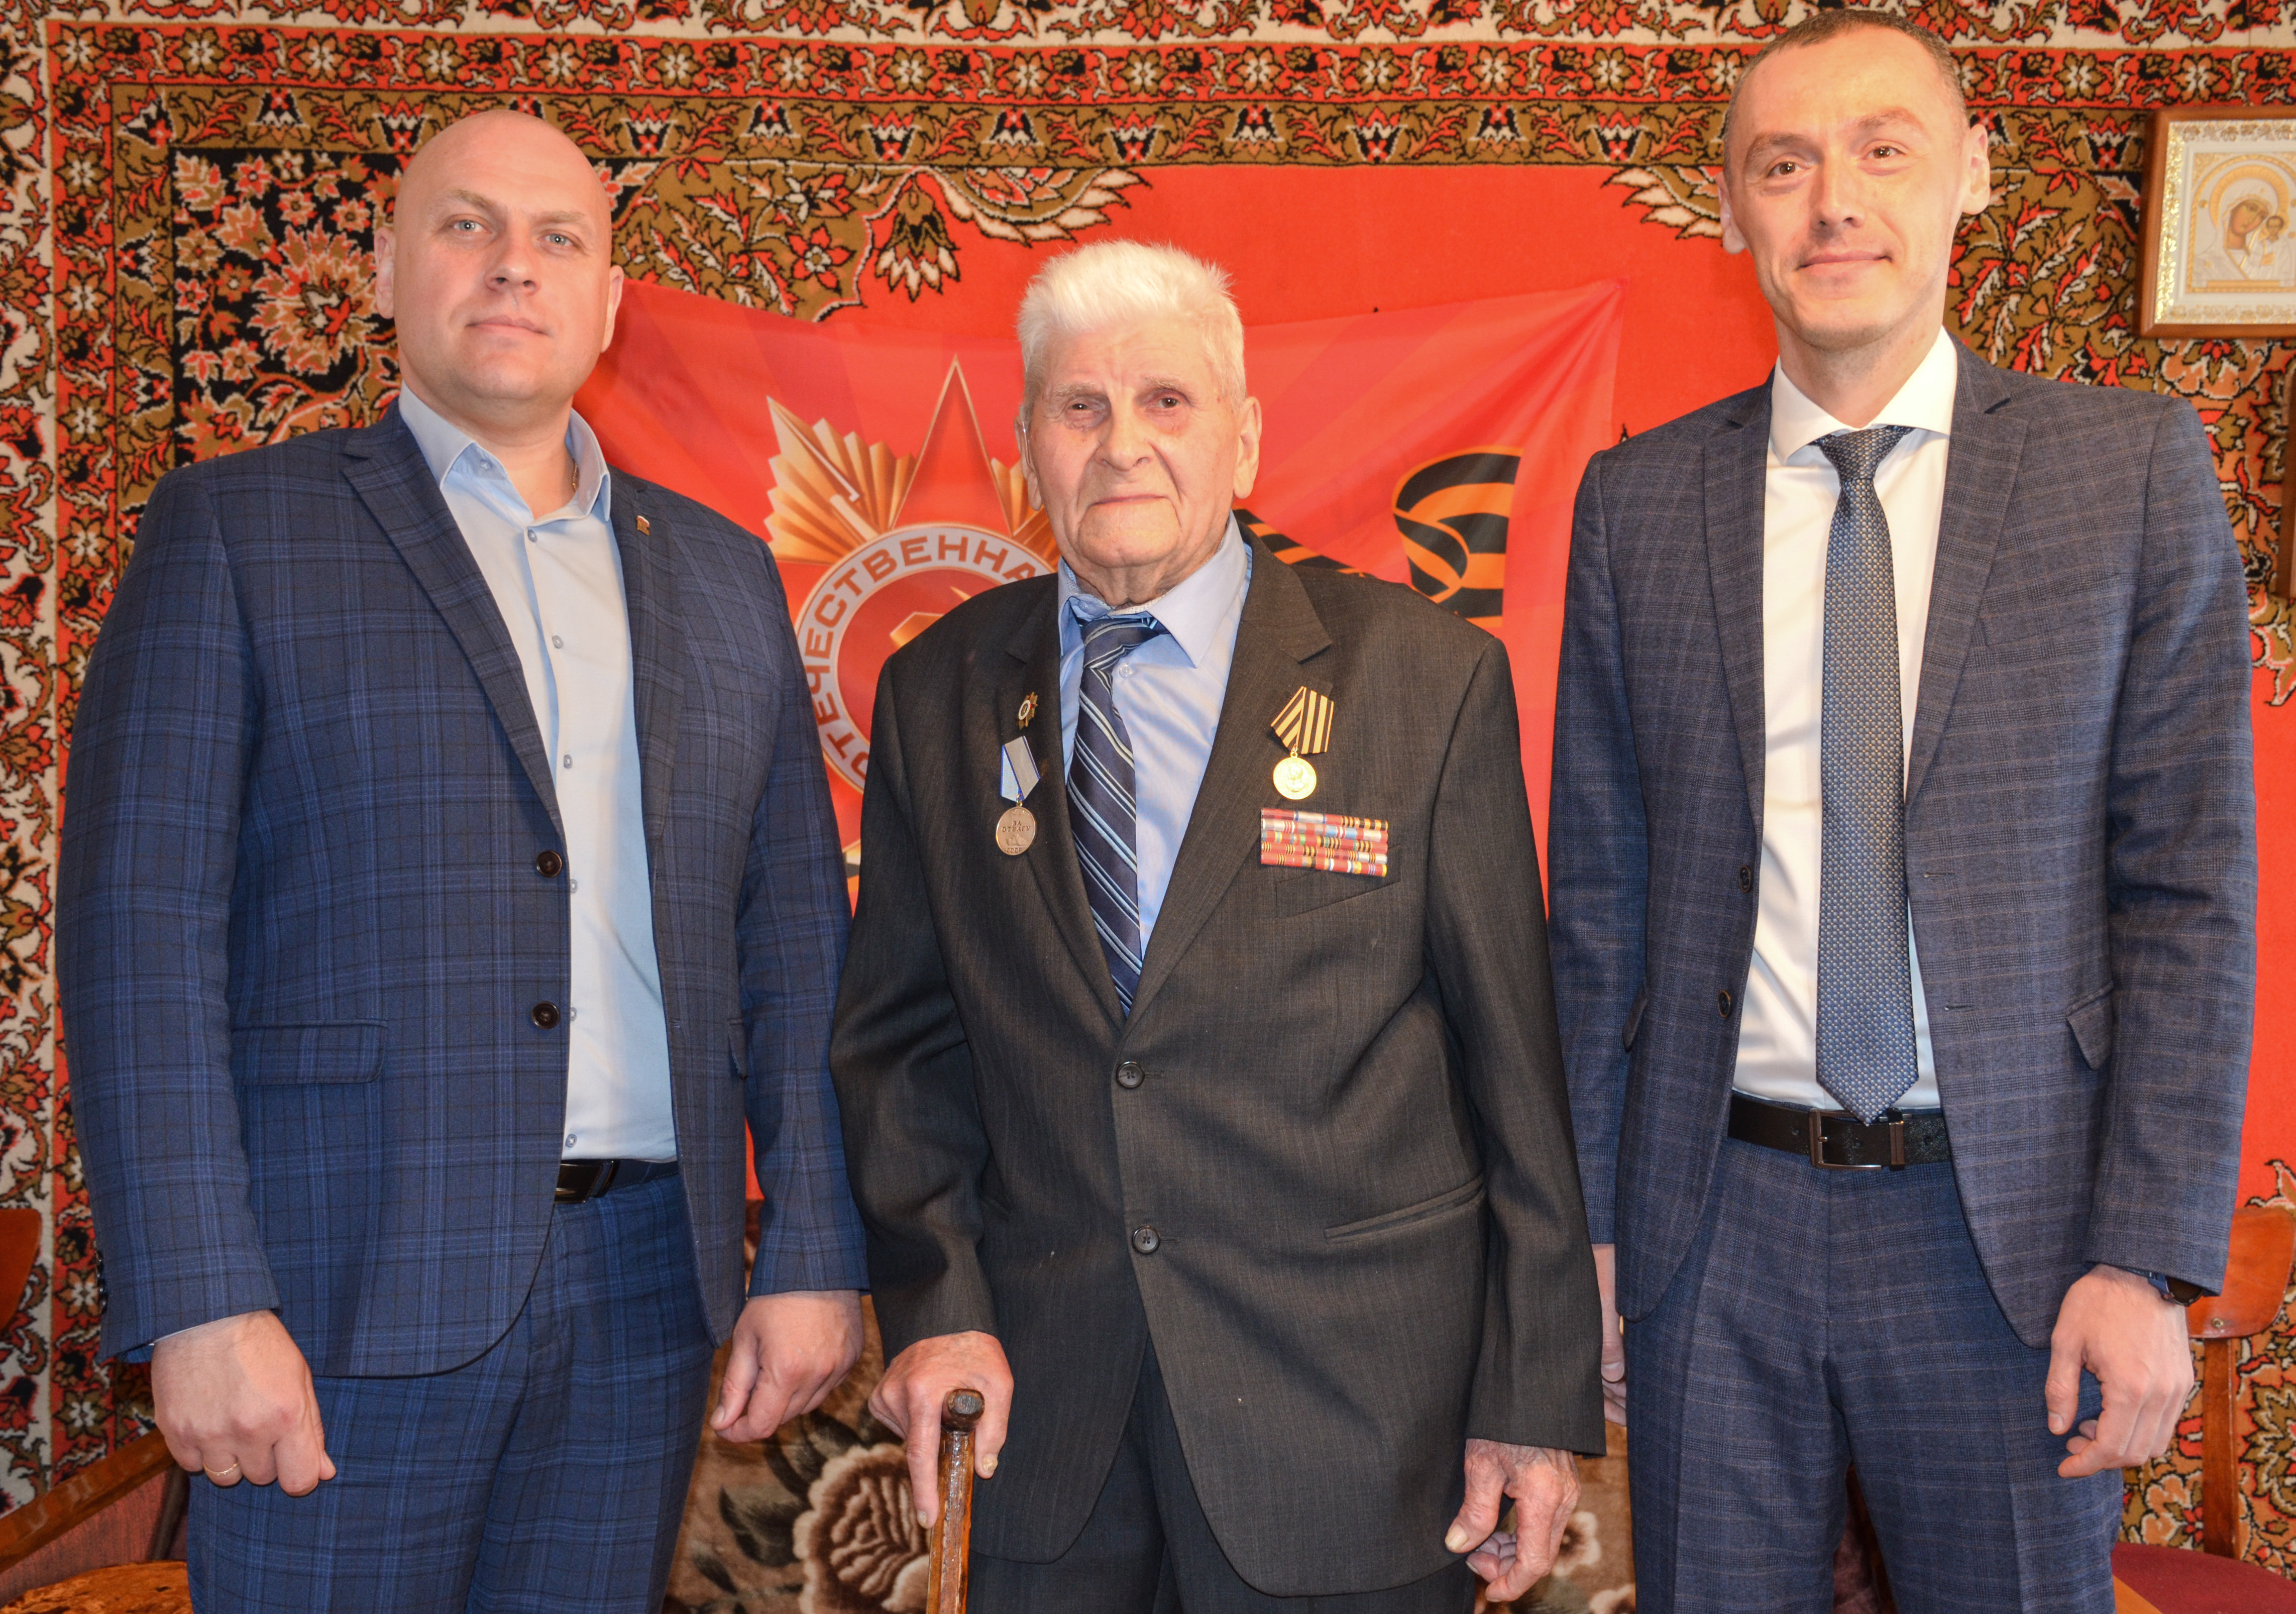 Нашему Ветерану Великой Отечественной войны Александру Тарасовичу Скирдину  были вручены дубликаты ранее утерянных наград.